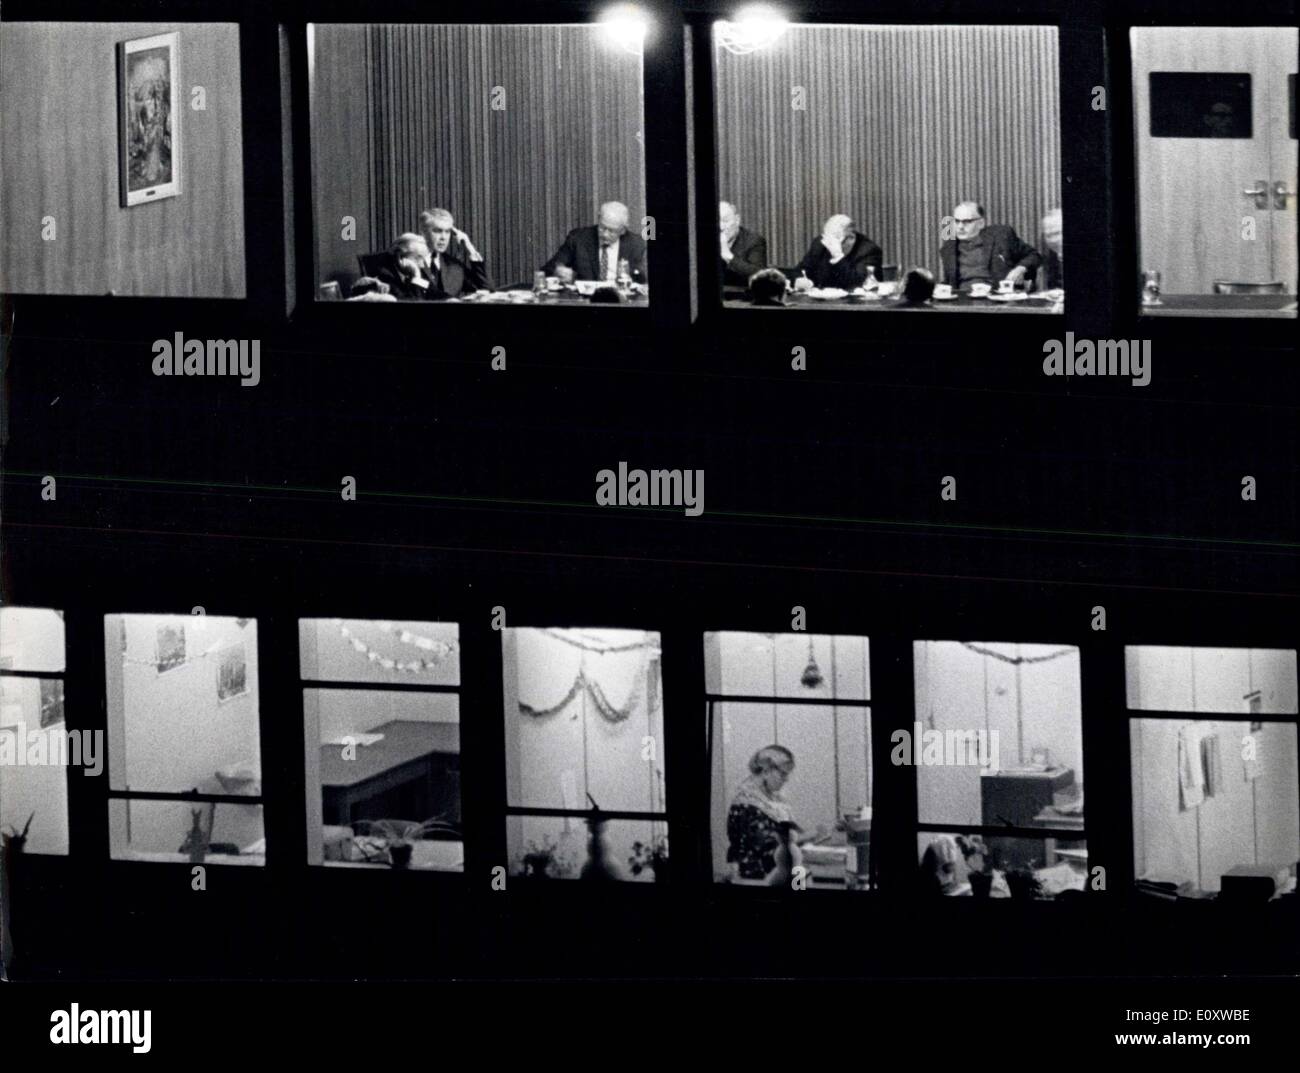 6. Dezember 1967 - The T.U.C. verhandelt mit Aslef: Dies war die Szene, die erleuchteten Fenster am Gebäude beherbergt das Hauptquartier von T.U.C im zentralen Nacht letzte Nacht dachte. O im vierten Stock, das Schwulen- und festliche Personal von der T.U.C. Haben ordentlich Papier Ketten hing die Fenster. Auf der fünften Etage diskutierten Vertreter der ASLEF, der Locomen Union den Bahn-Streit mit dem T.U.C.-Ausschuss. Von links: T.U.C. Ausschussmitglieder Lewis Wright (Weber) George Woodcock (T.U.C Stockfoto